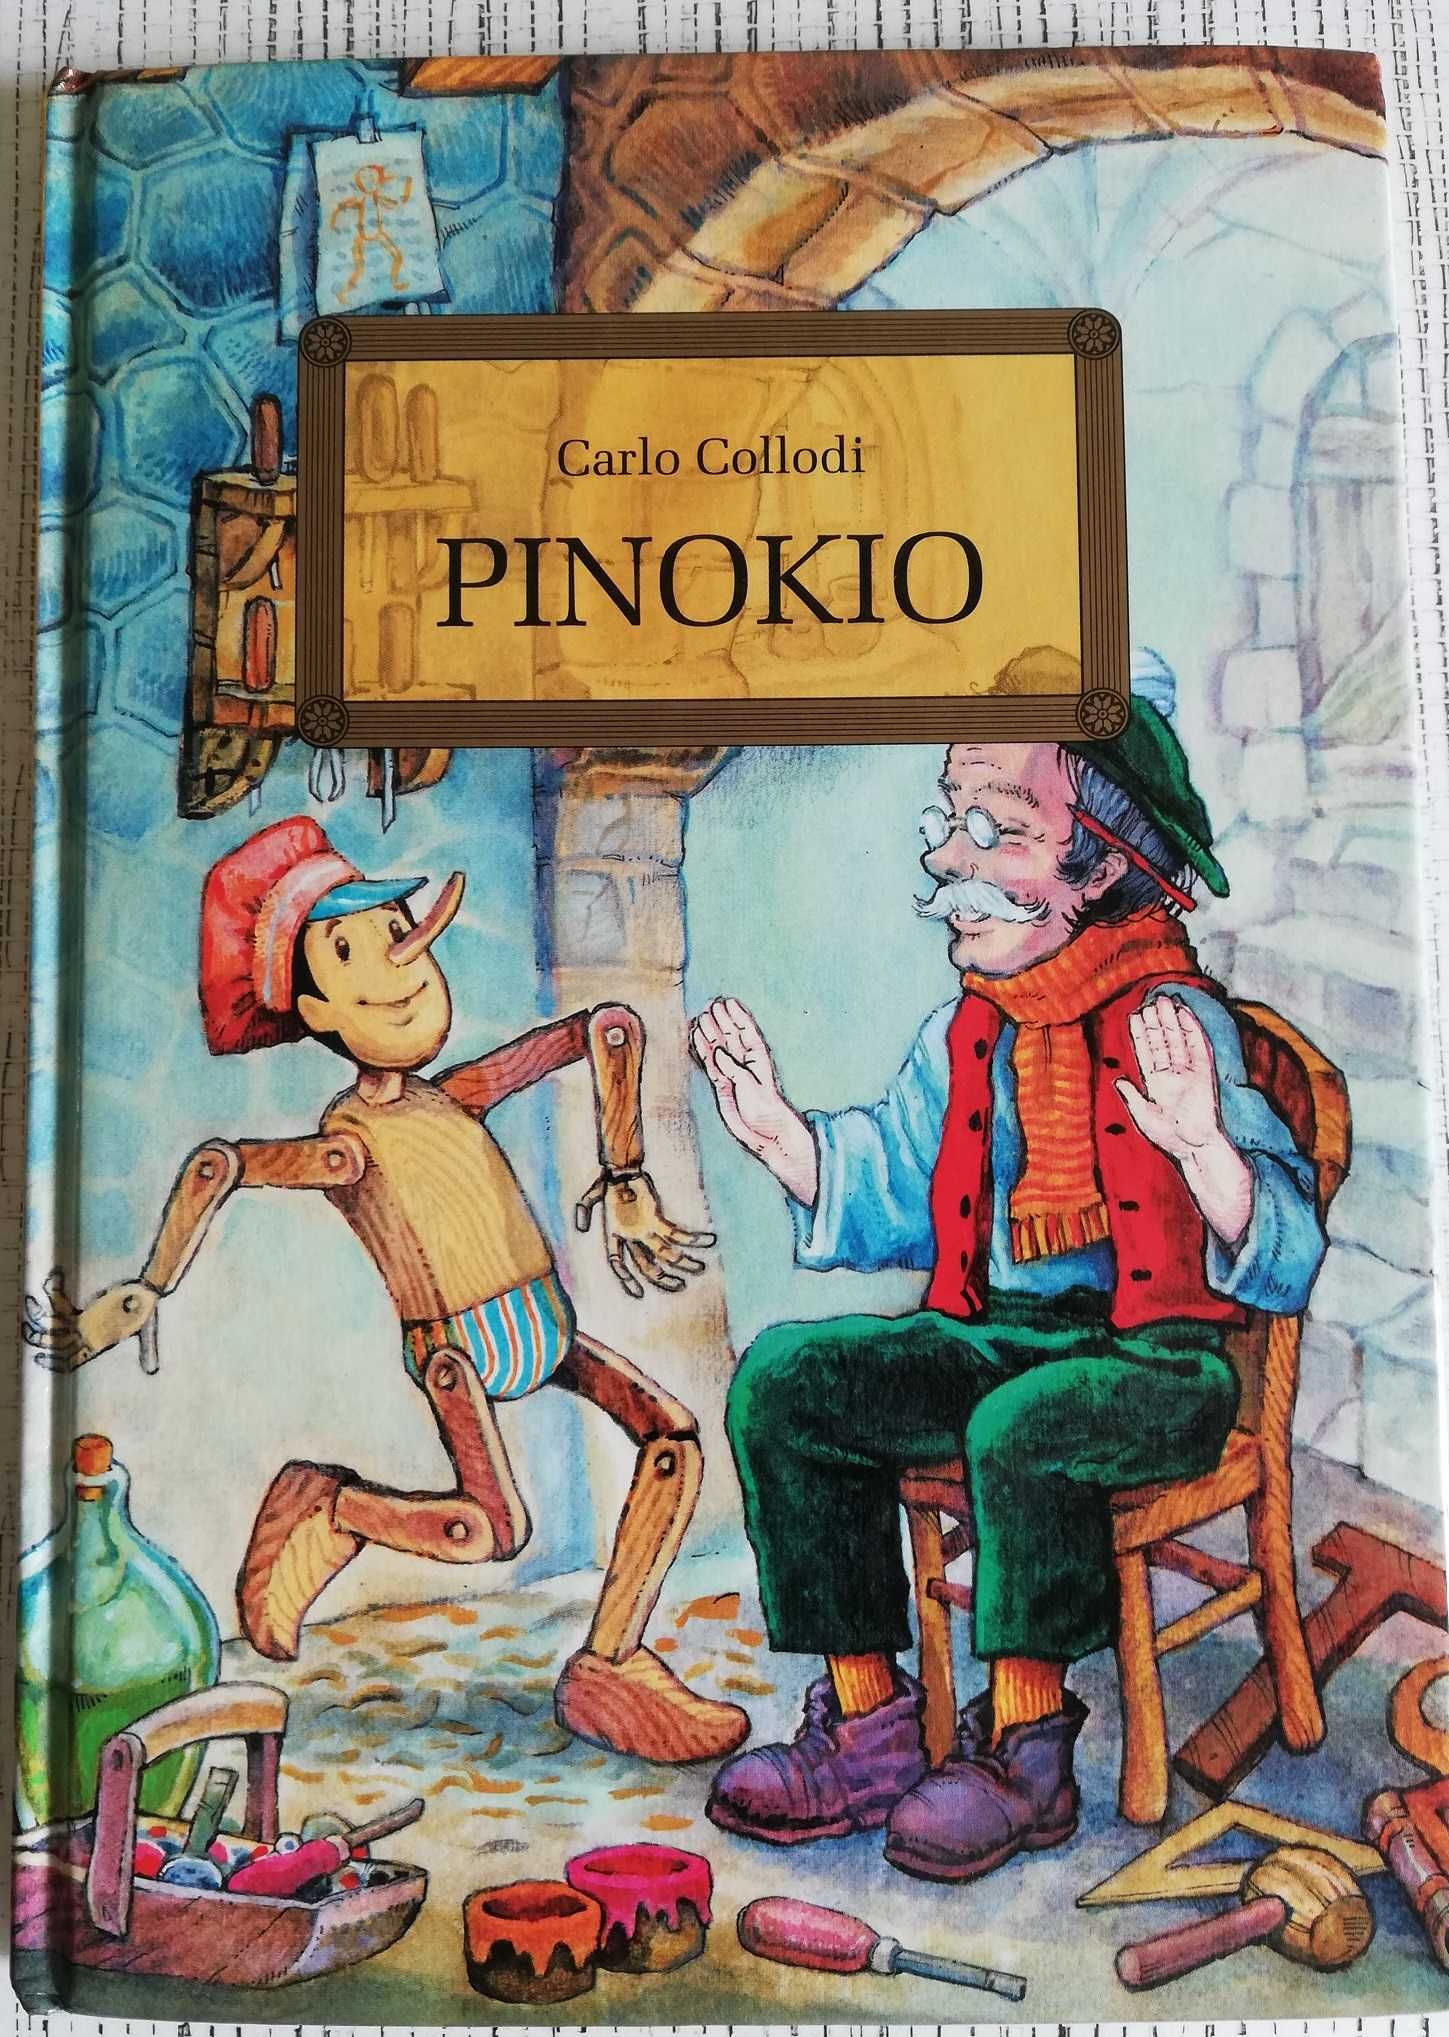 Carlo Collodi "Pinokio" 2005